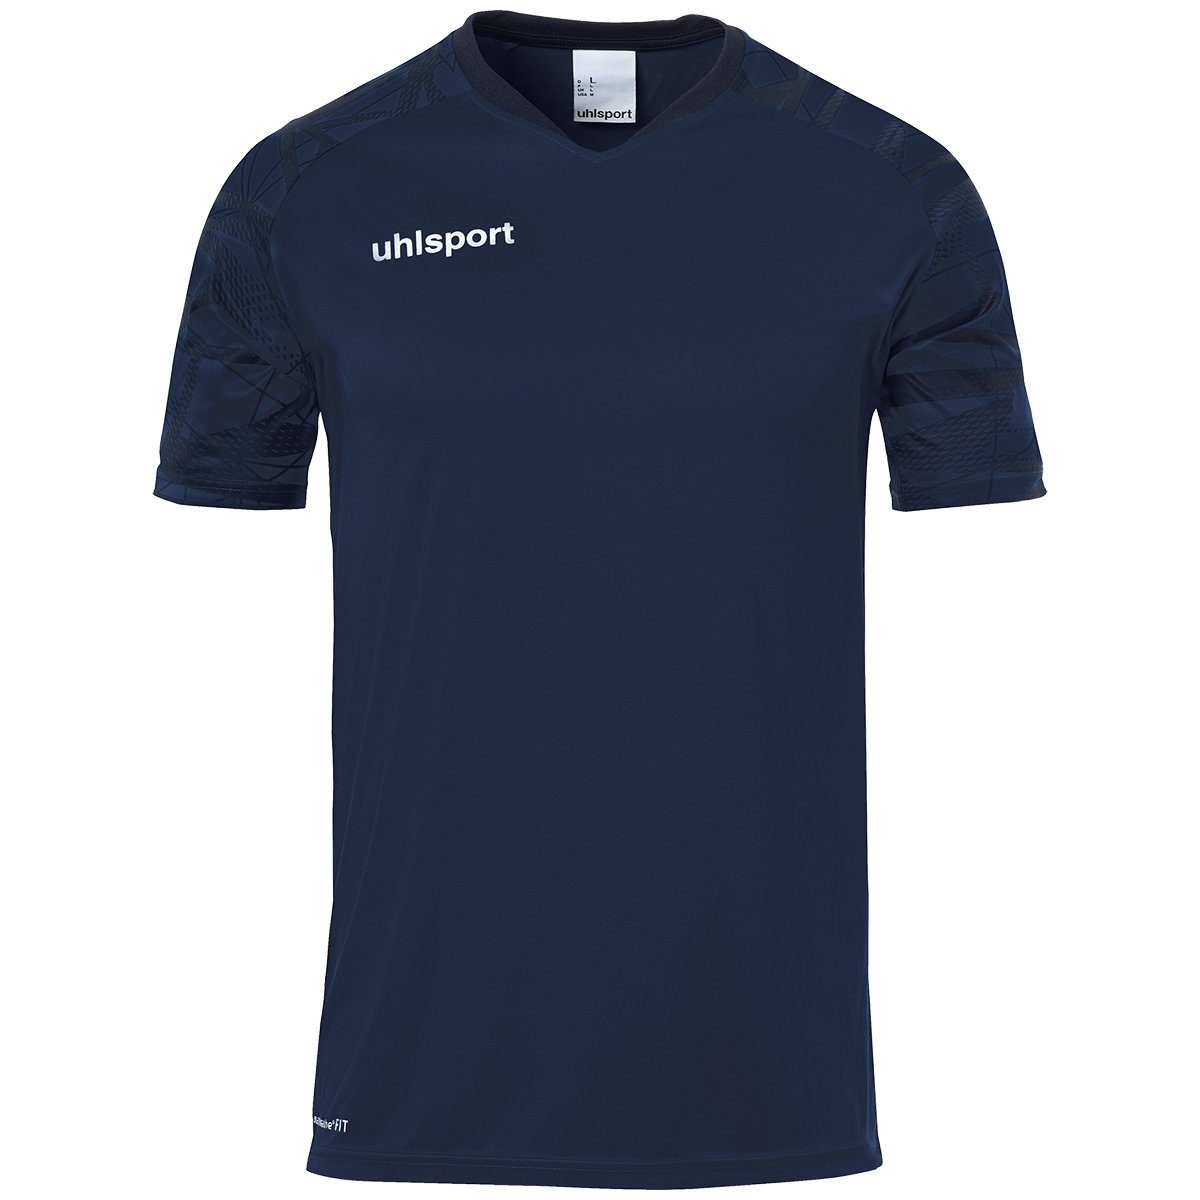 GOAL uhlsport 25 uhlsport Trainingsshirt KURZARM TRIKOT atmungsaktiv marine/marine Trainings-T-Shirt